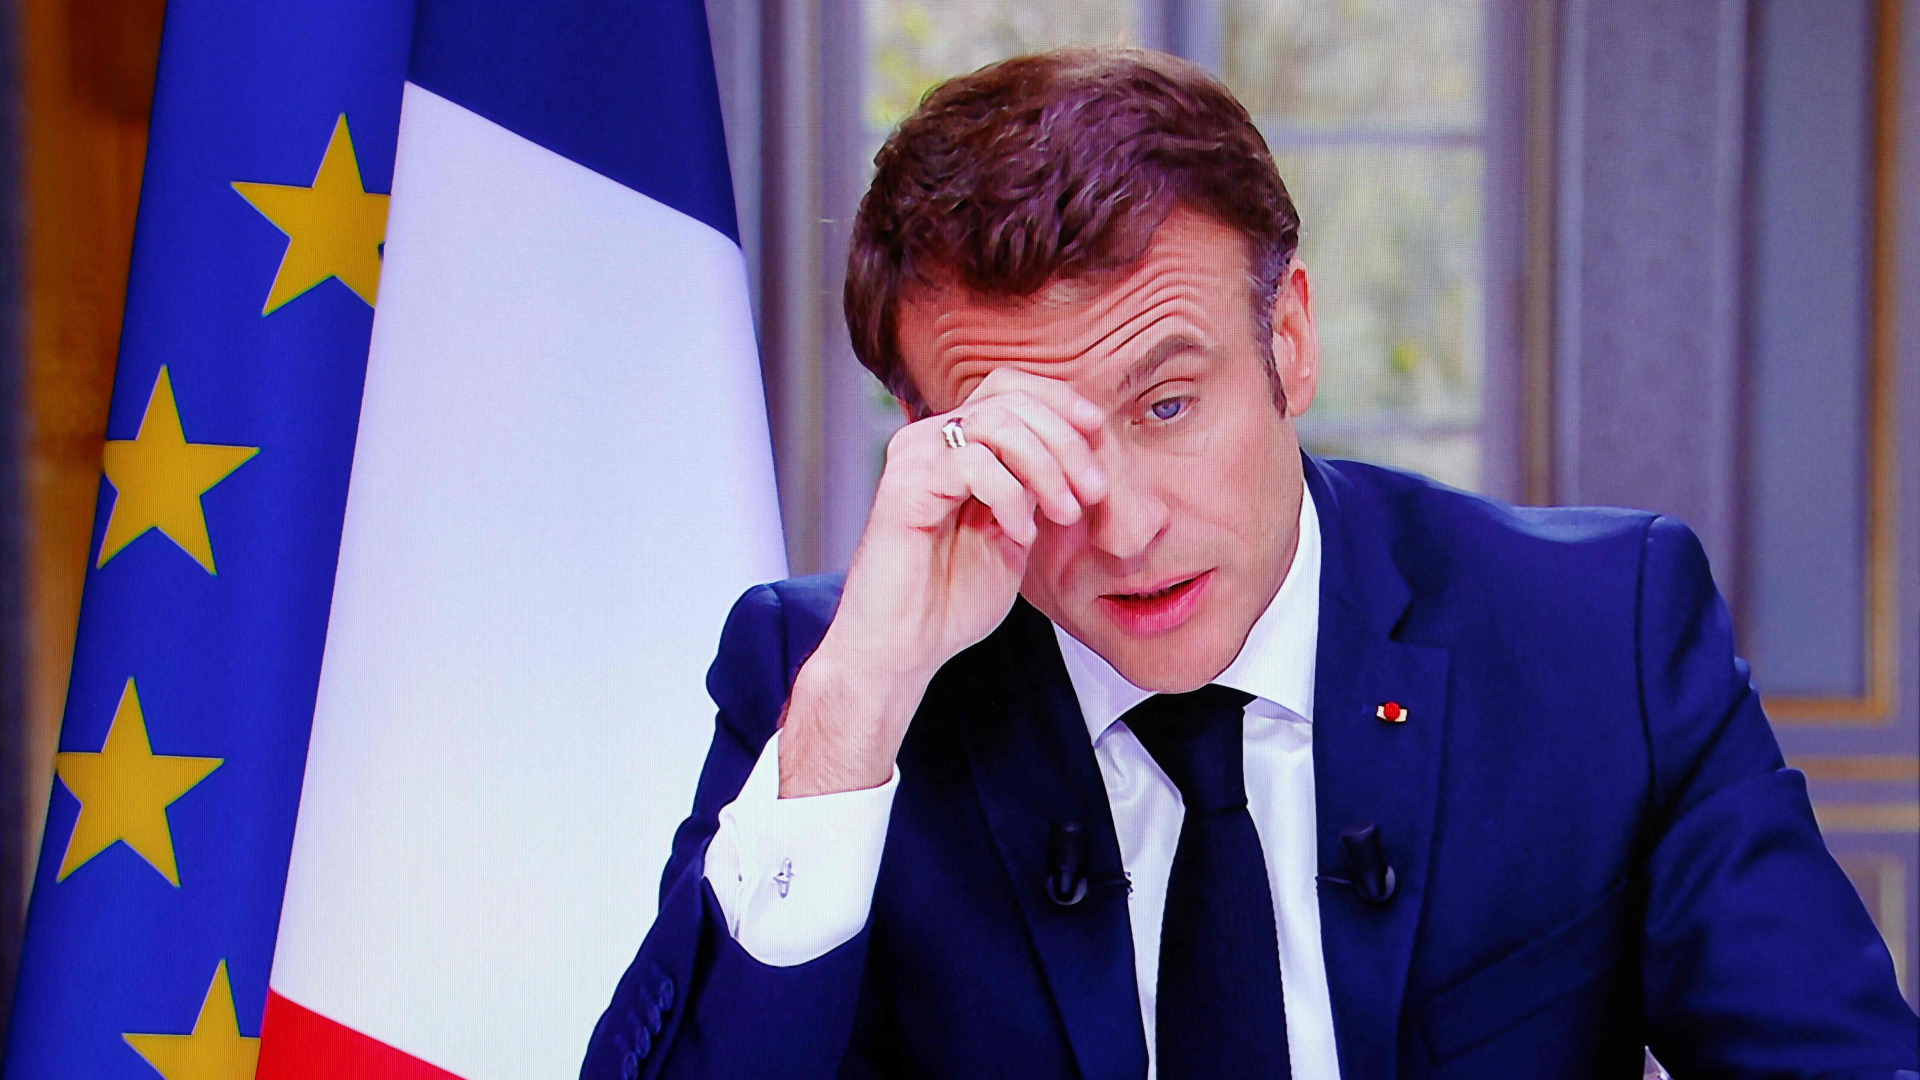 Der französische Präsident Emmanuel Macron ist auf dem Bildschirm zu sehen, als er während eines Fernsehinterviews aus dem Elysee-Palast in Paris spricht